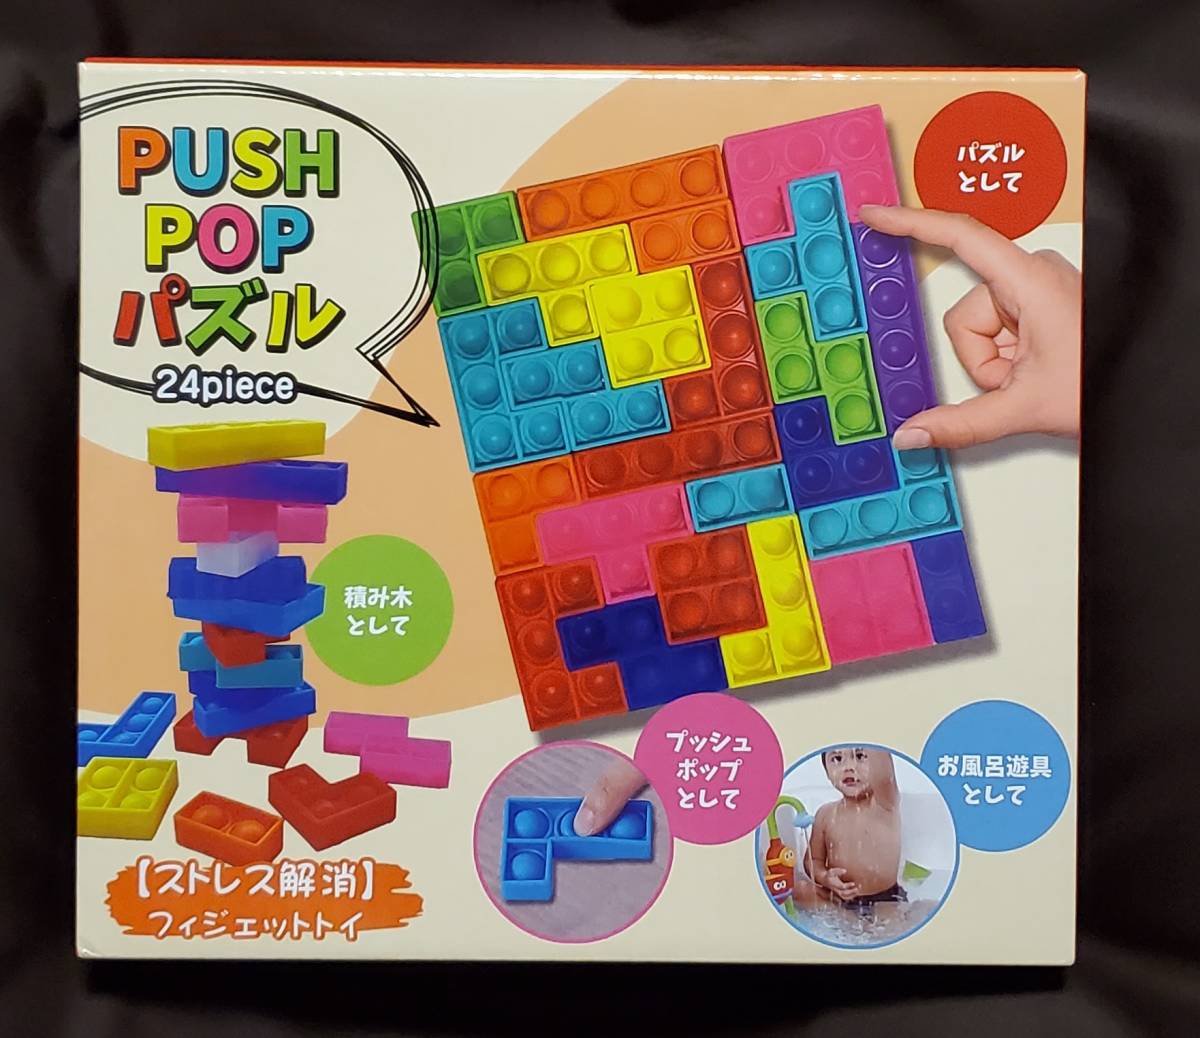 PUSH POP мозаика 24piece ~ развлечения ~